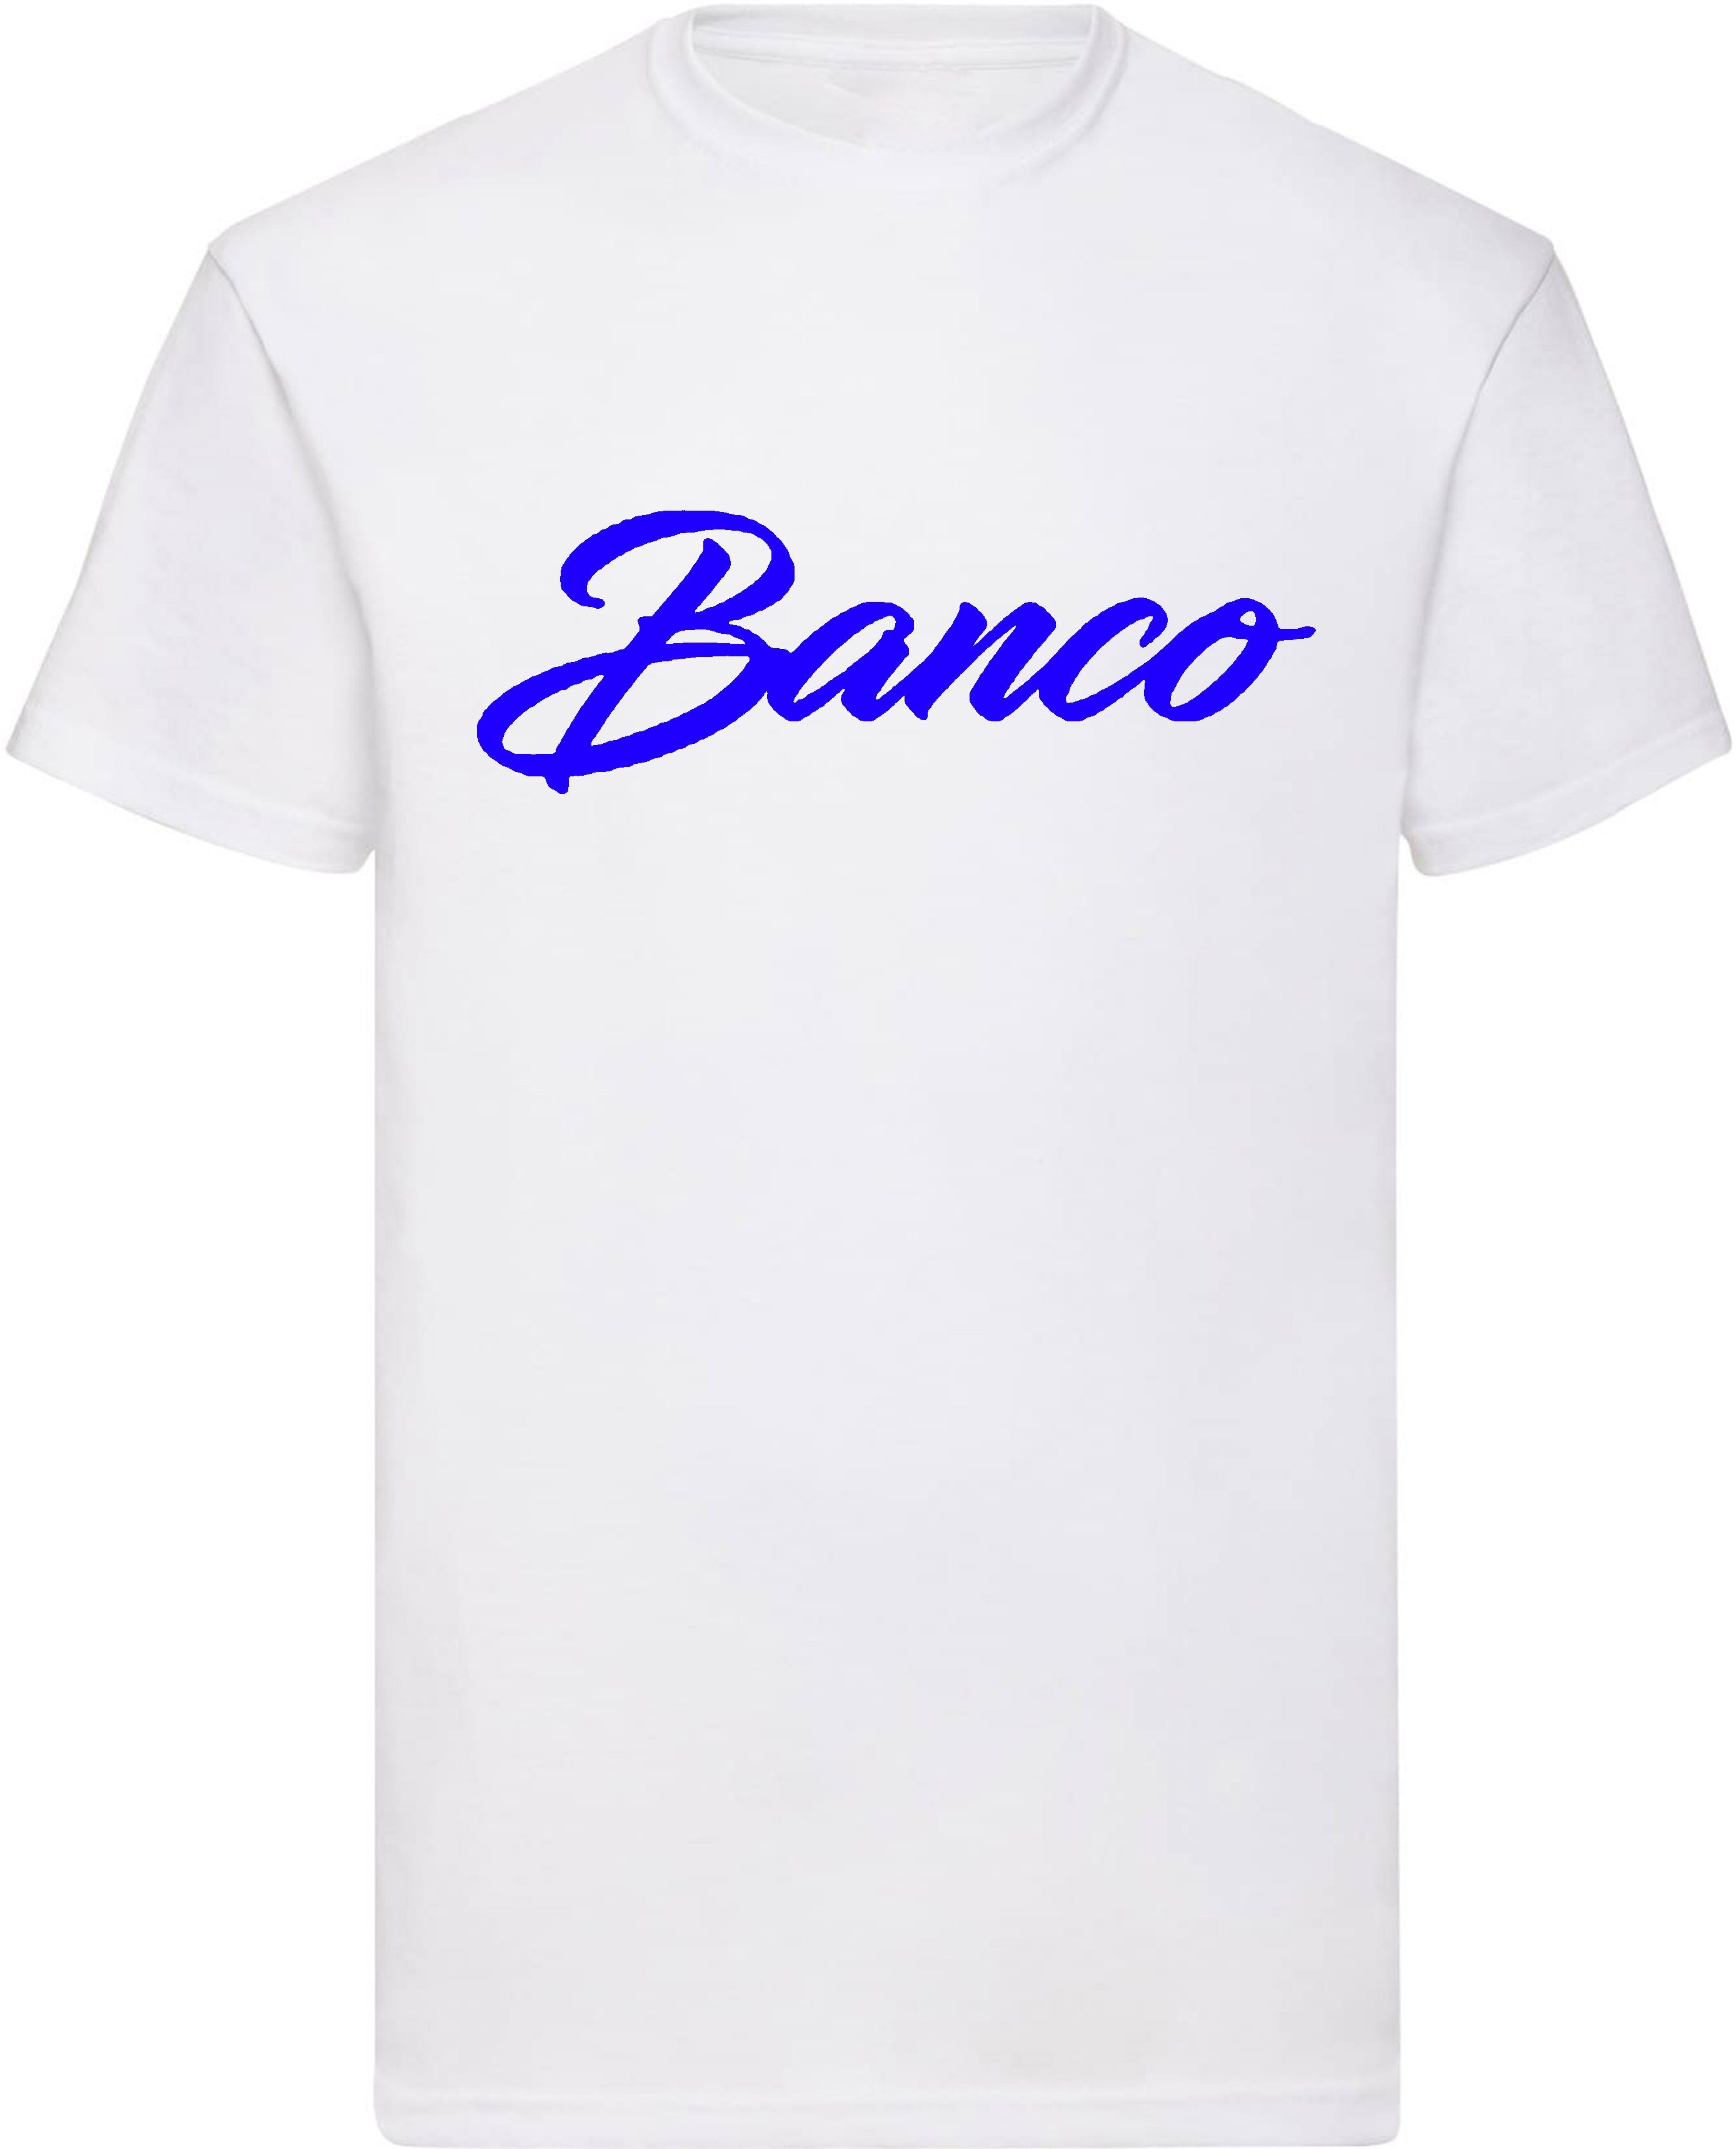 Banco T-Shirt Kurzarm 100% Baumwolle Rundhals Shirt Sommer Sport Freizeit Streetwear WeißBlau